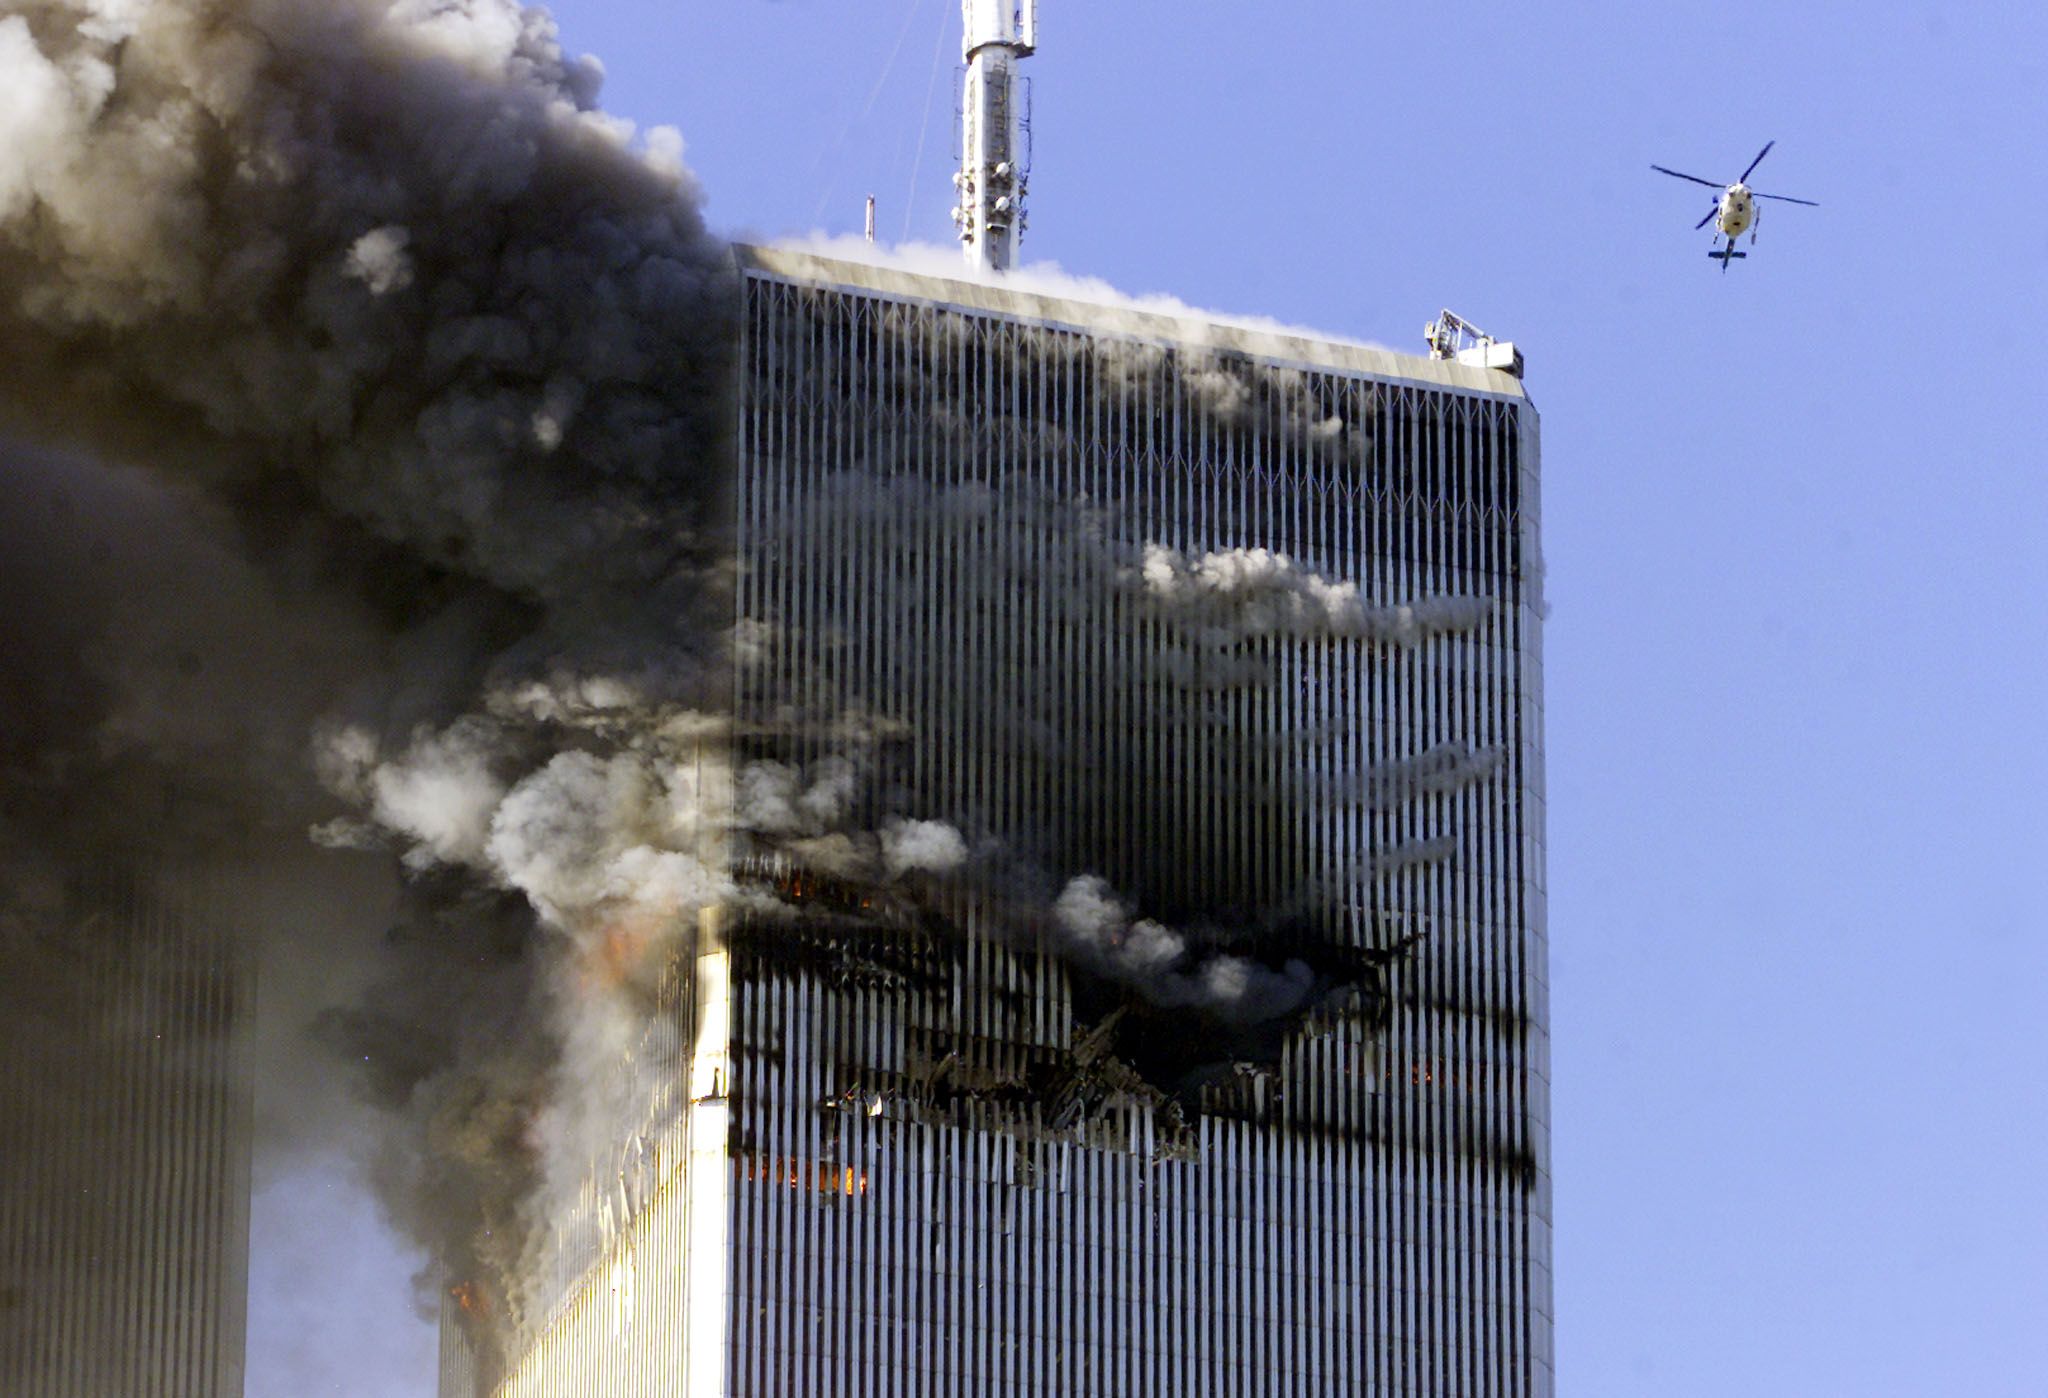 Теракт в 2001 году 11 сентября. Башни-Близнецы 11 сентября 2001. Взрыв башен-близнецов в Нью-Йорке 11 сентября.